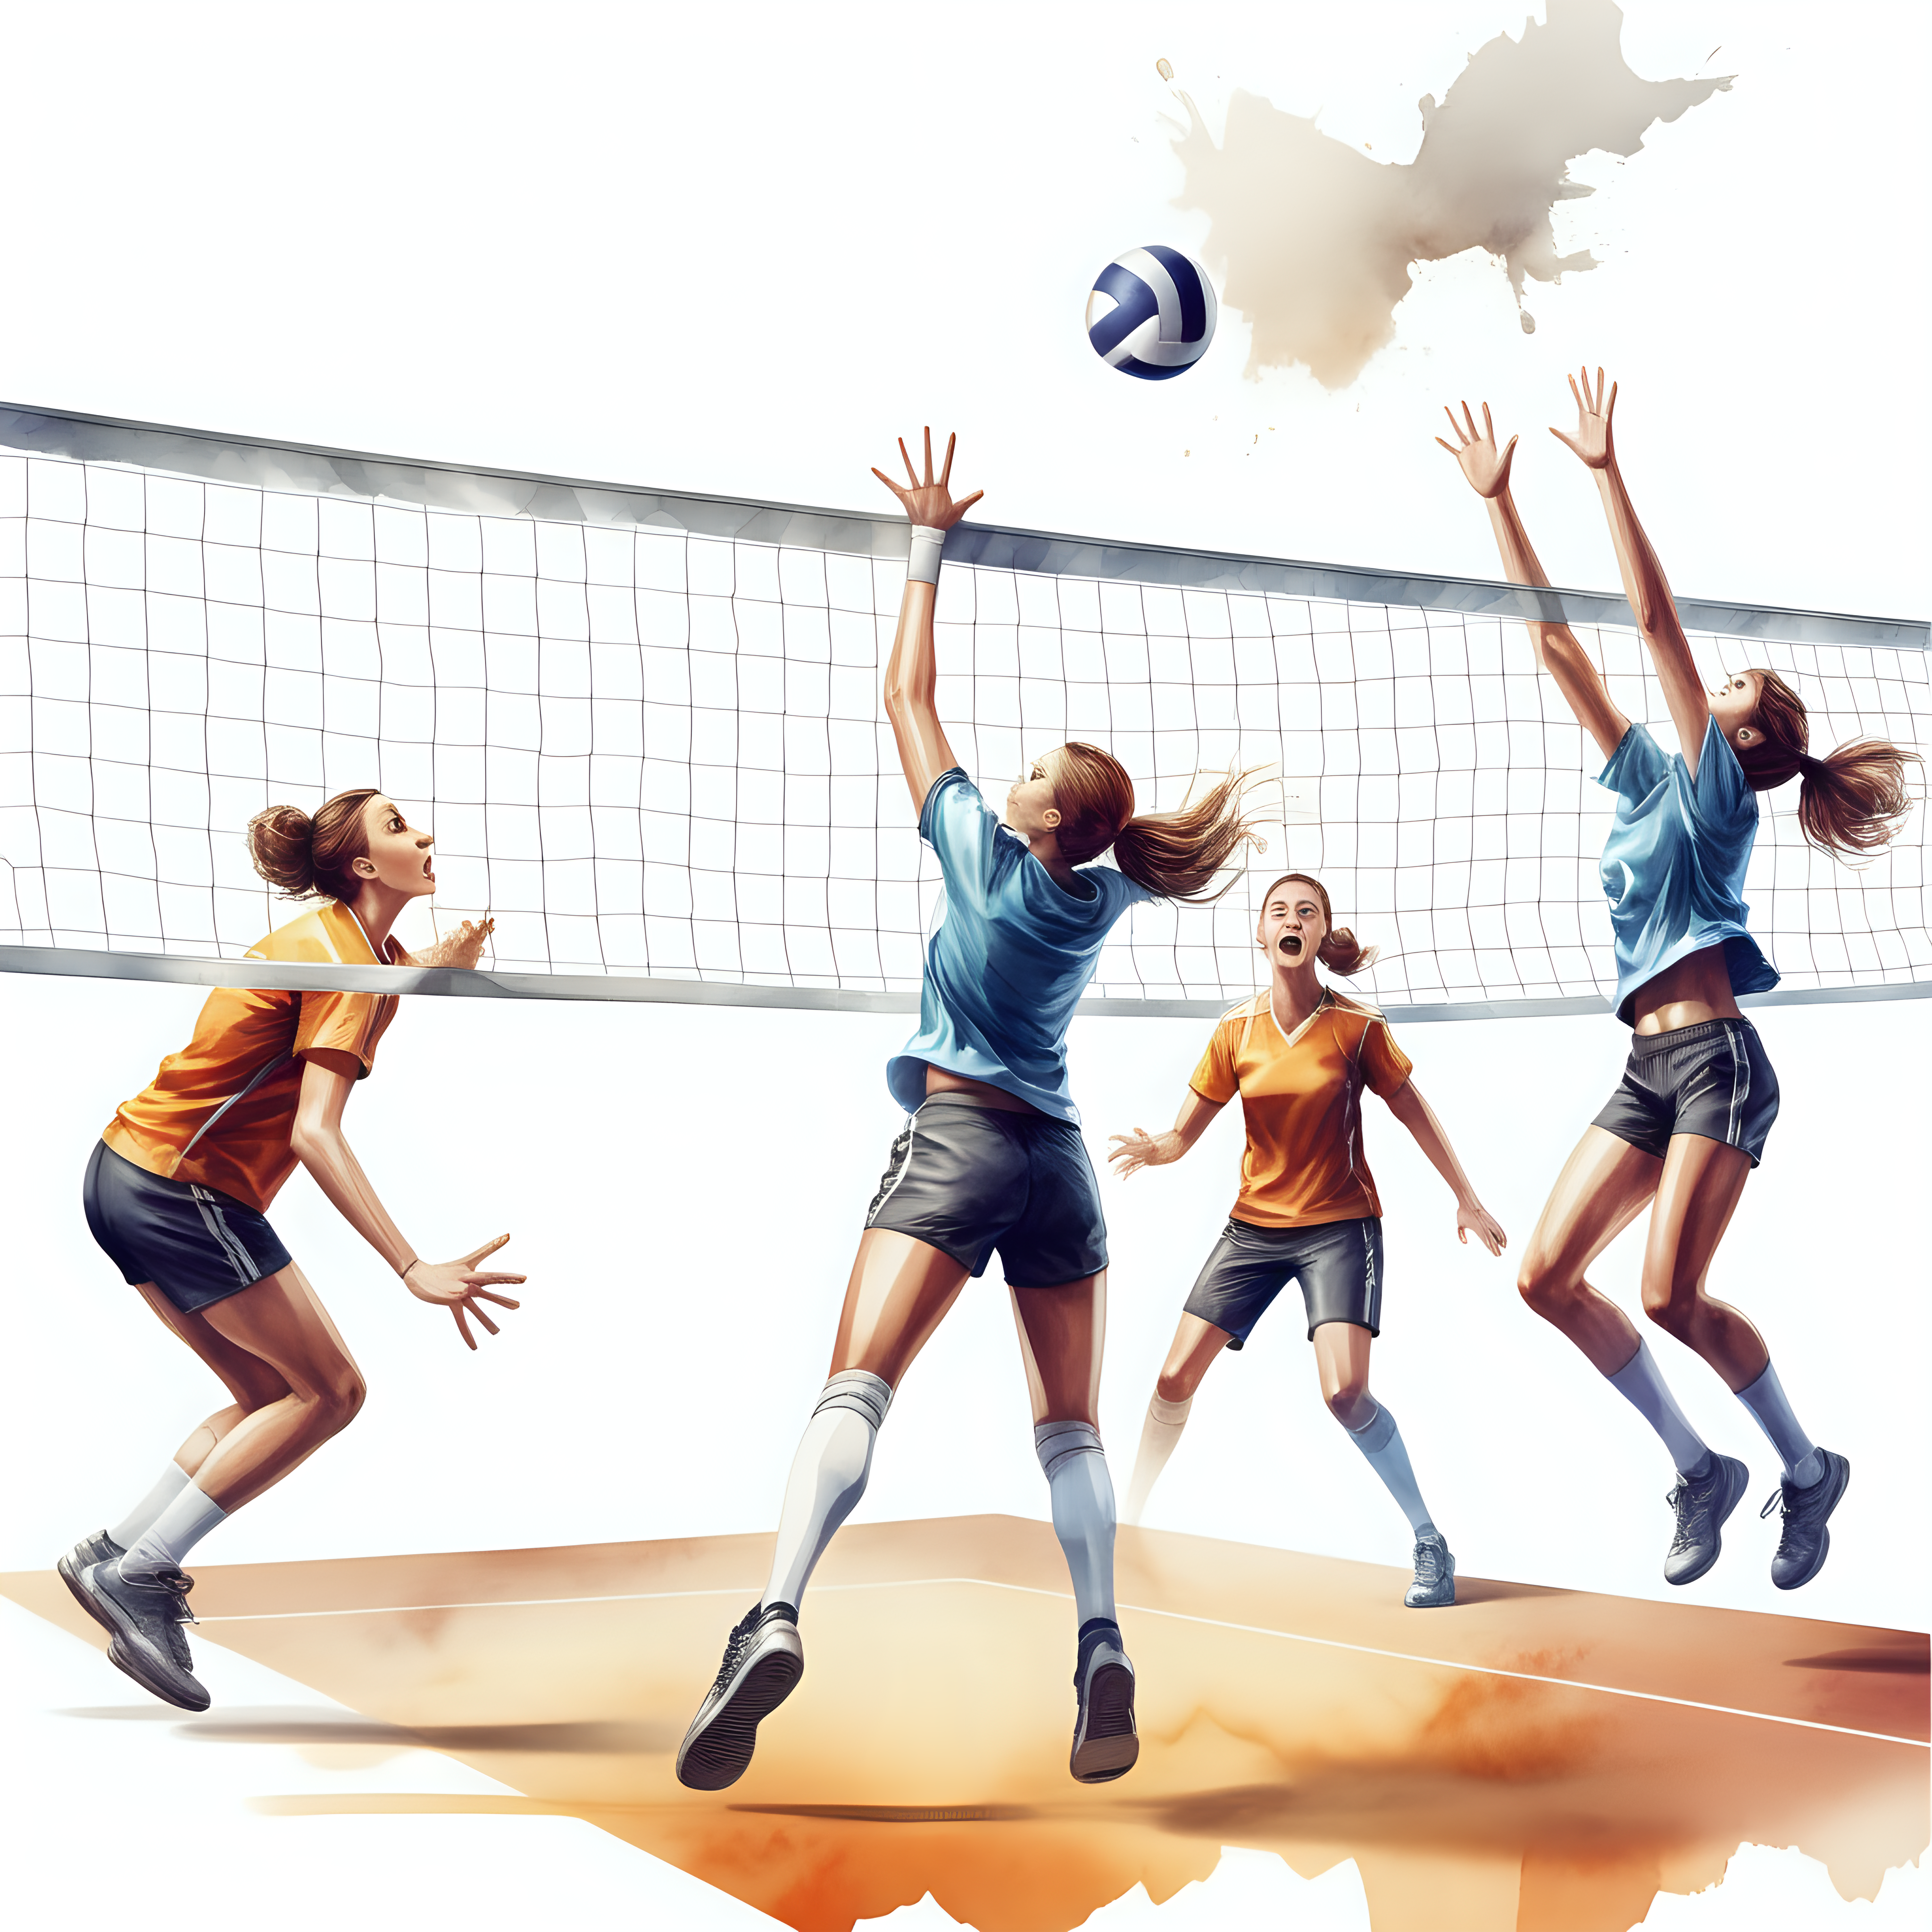 white backgroundcreate a realistic illustrationshot of athletes playing